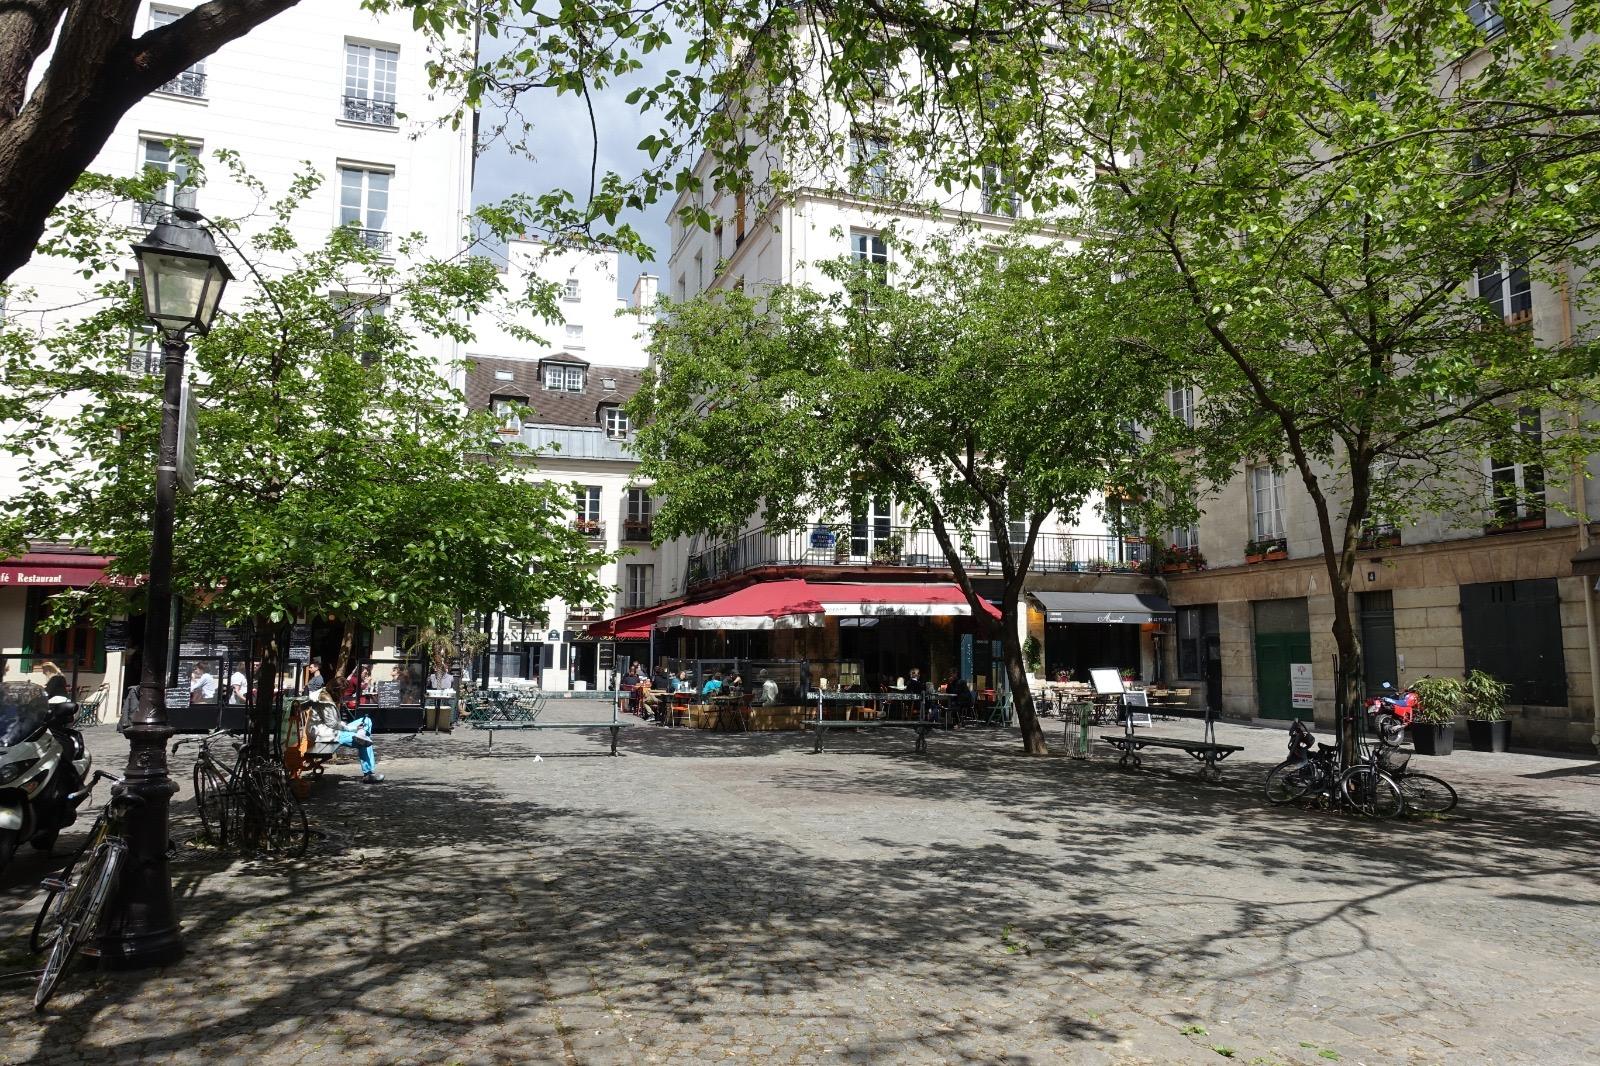 place du marché Sainte-Catherine near 9Confidentiel hotel